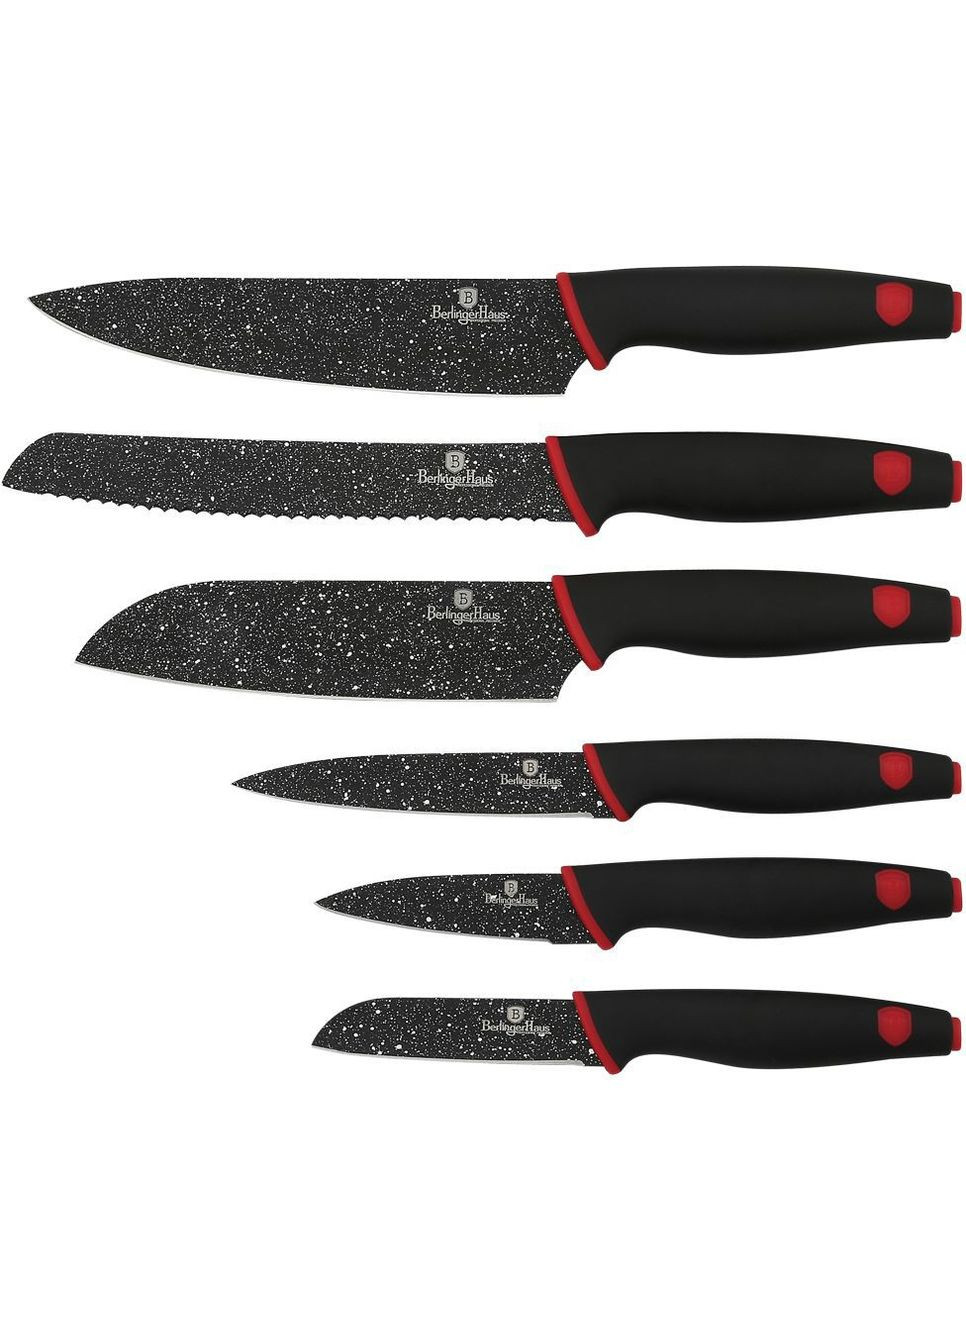 Набор ножей 6 предметов Stone Touch Line Black BH2114 Berlinger Haus комбинированные,